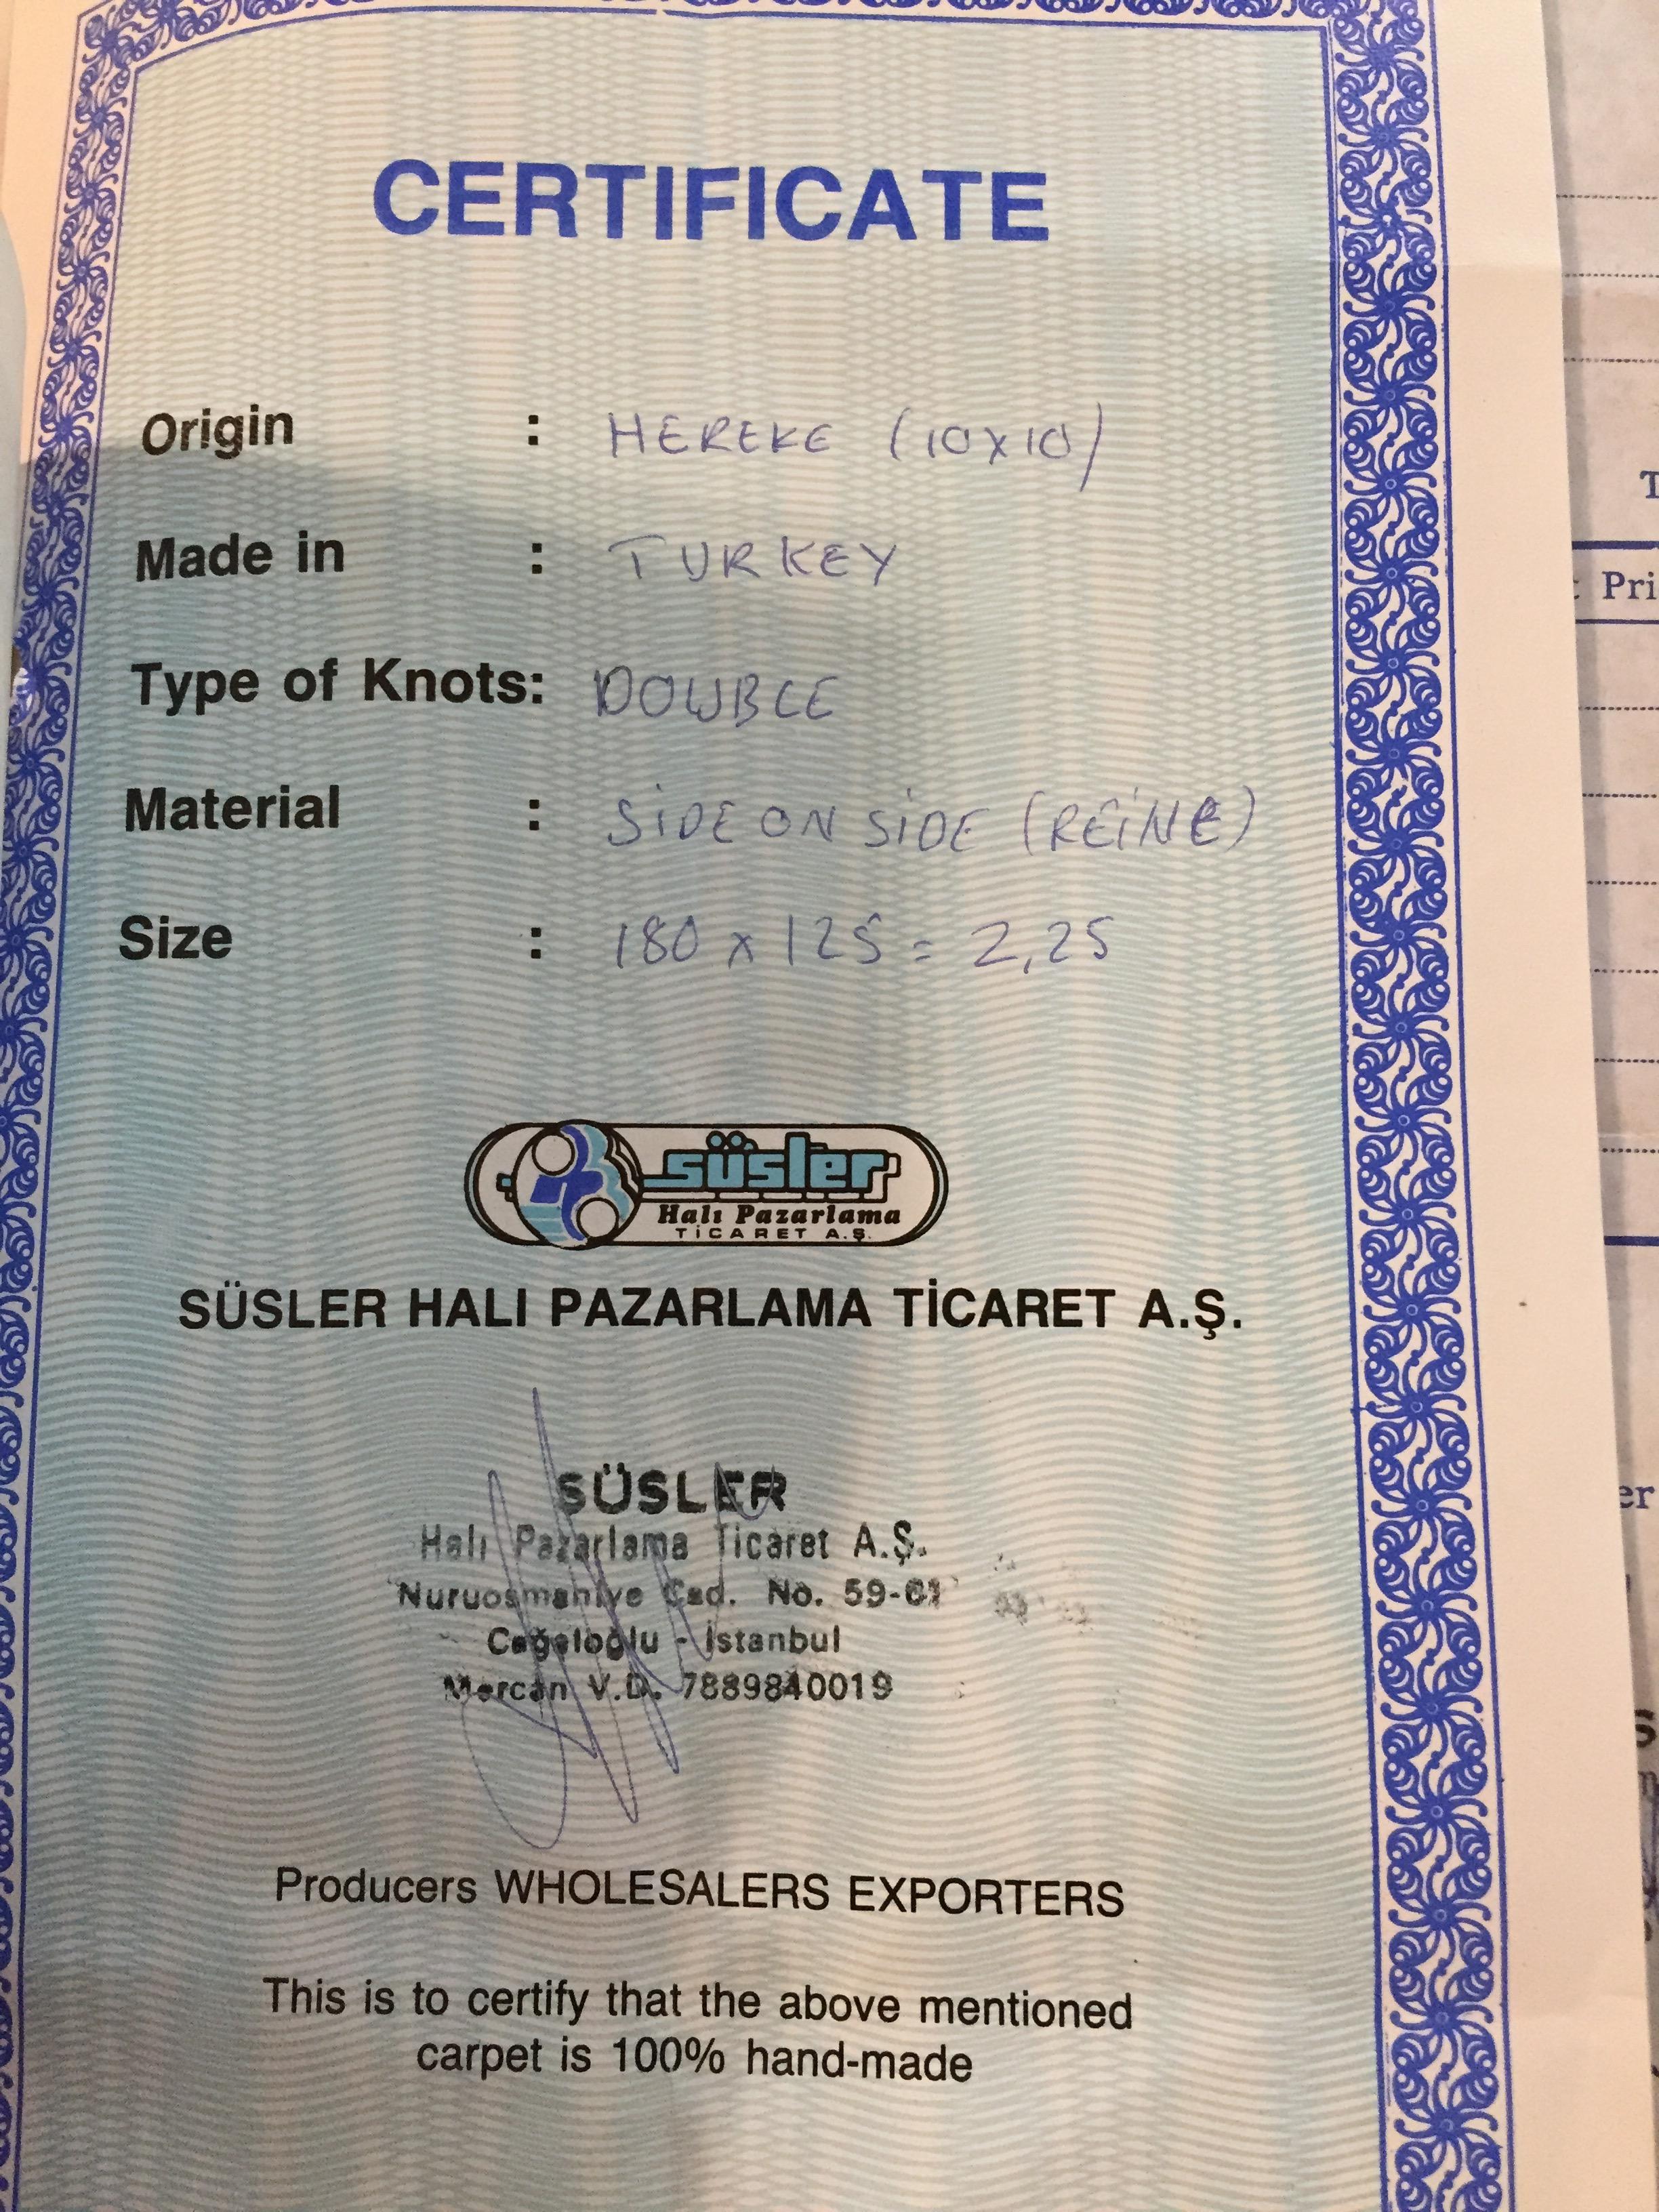 reiner Seidenteppich Region Hereke Türkei mit Zertifikat 13